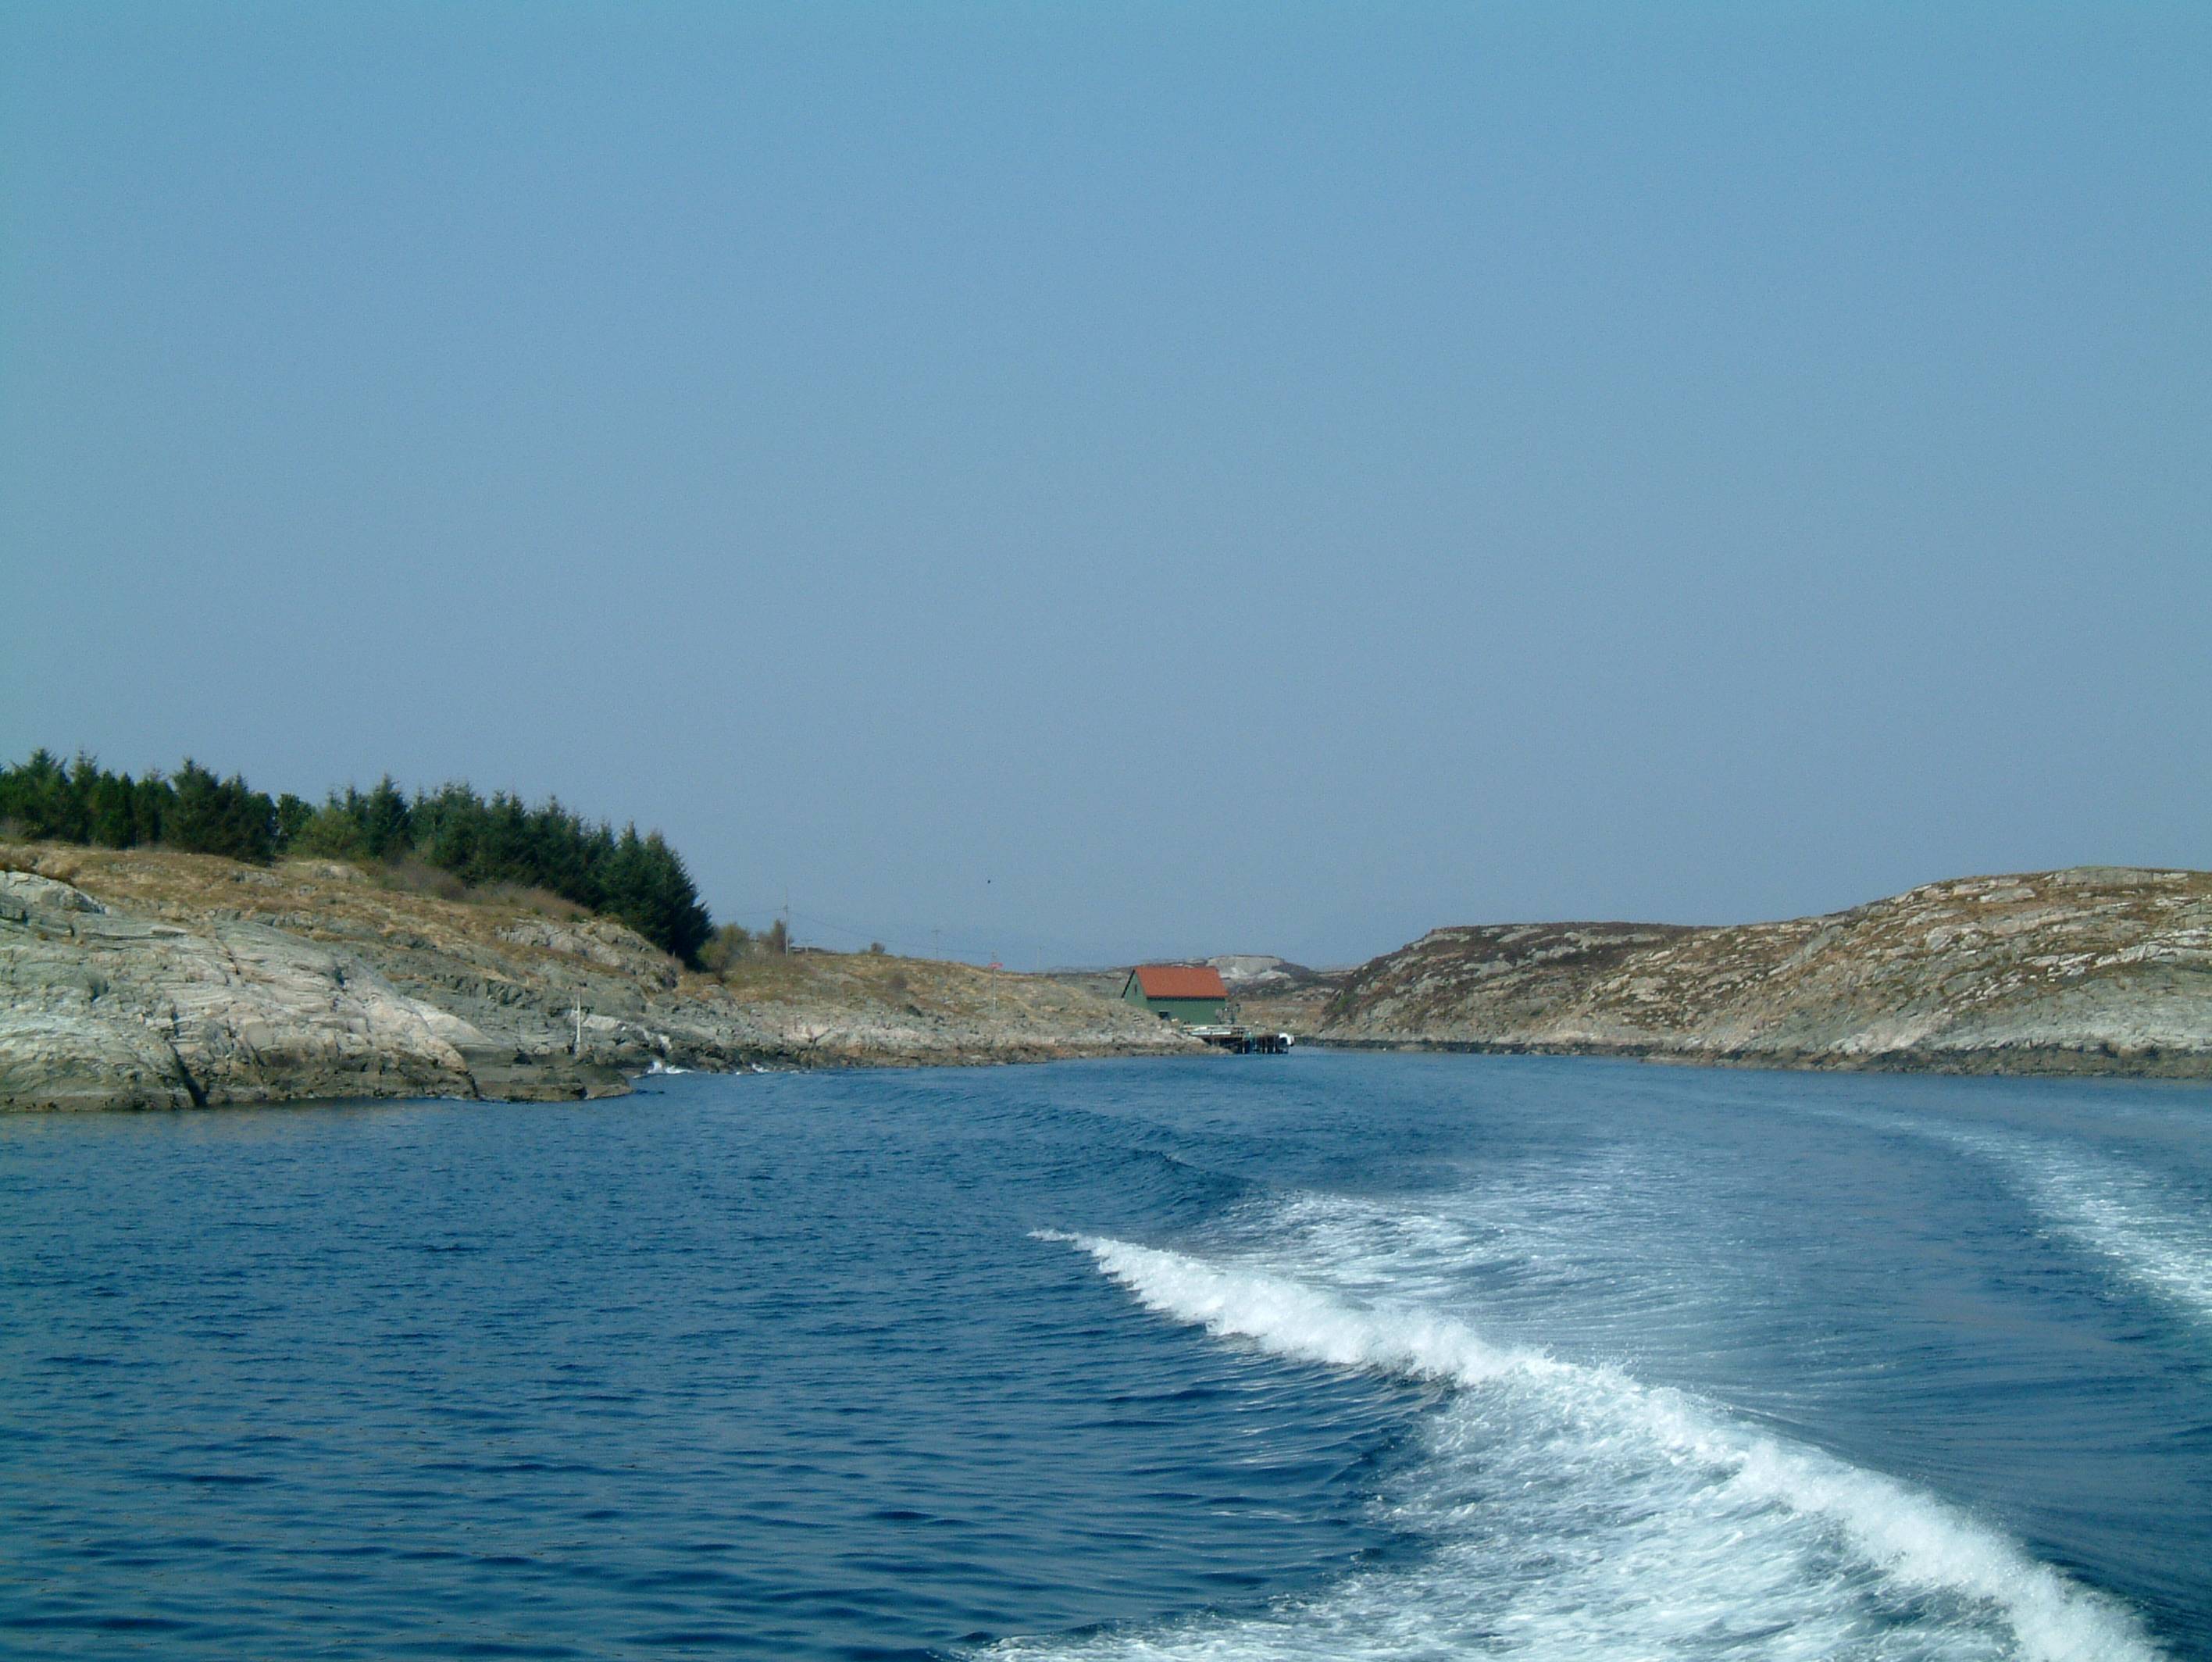 TorneRose-Eivindvik on the SeaWay